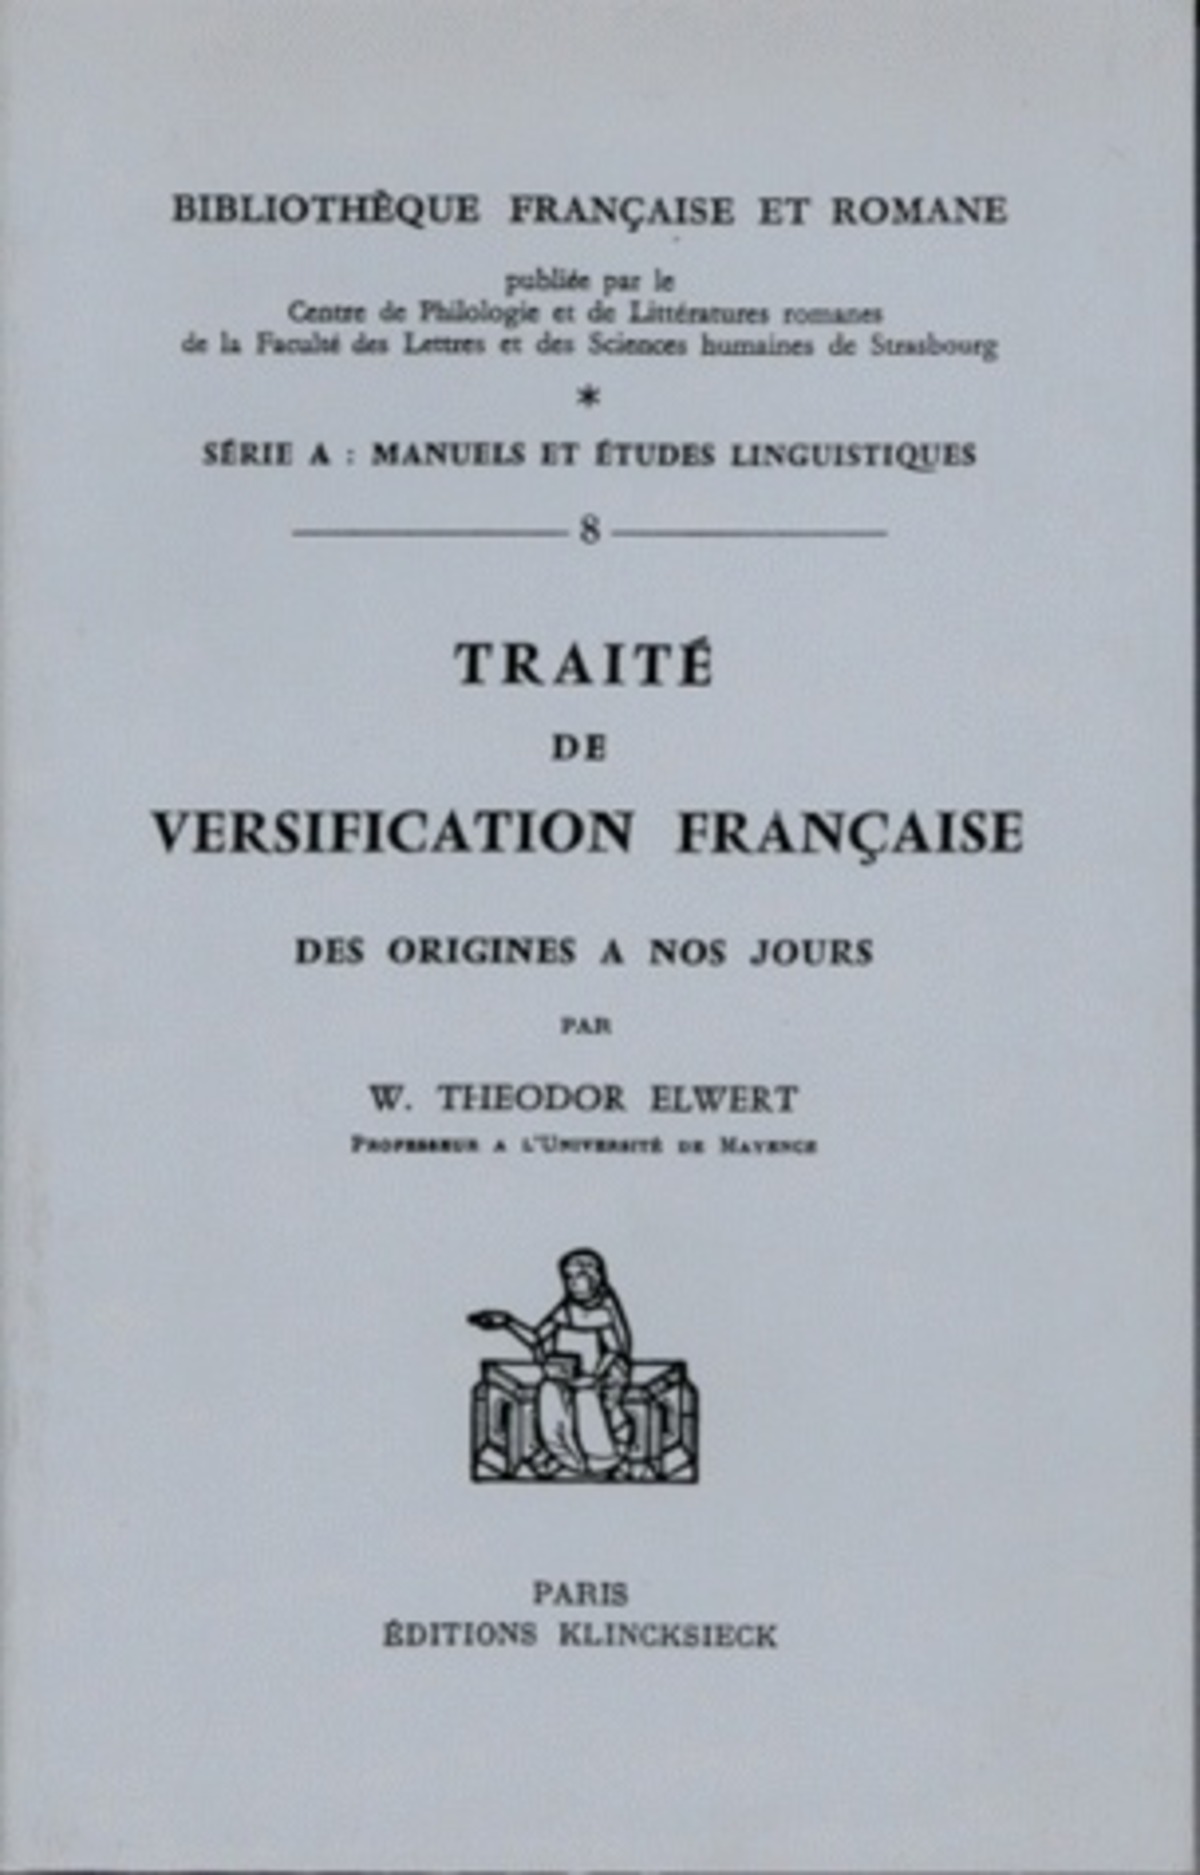 Traité de versification française